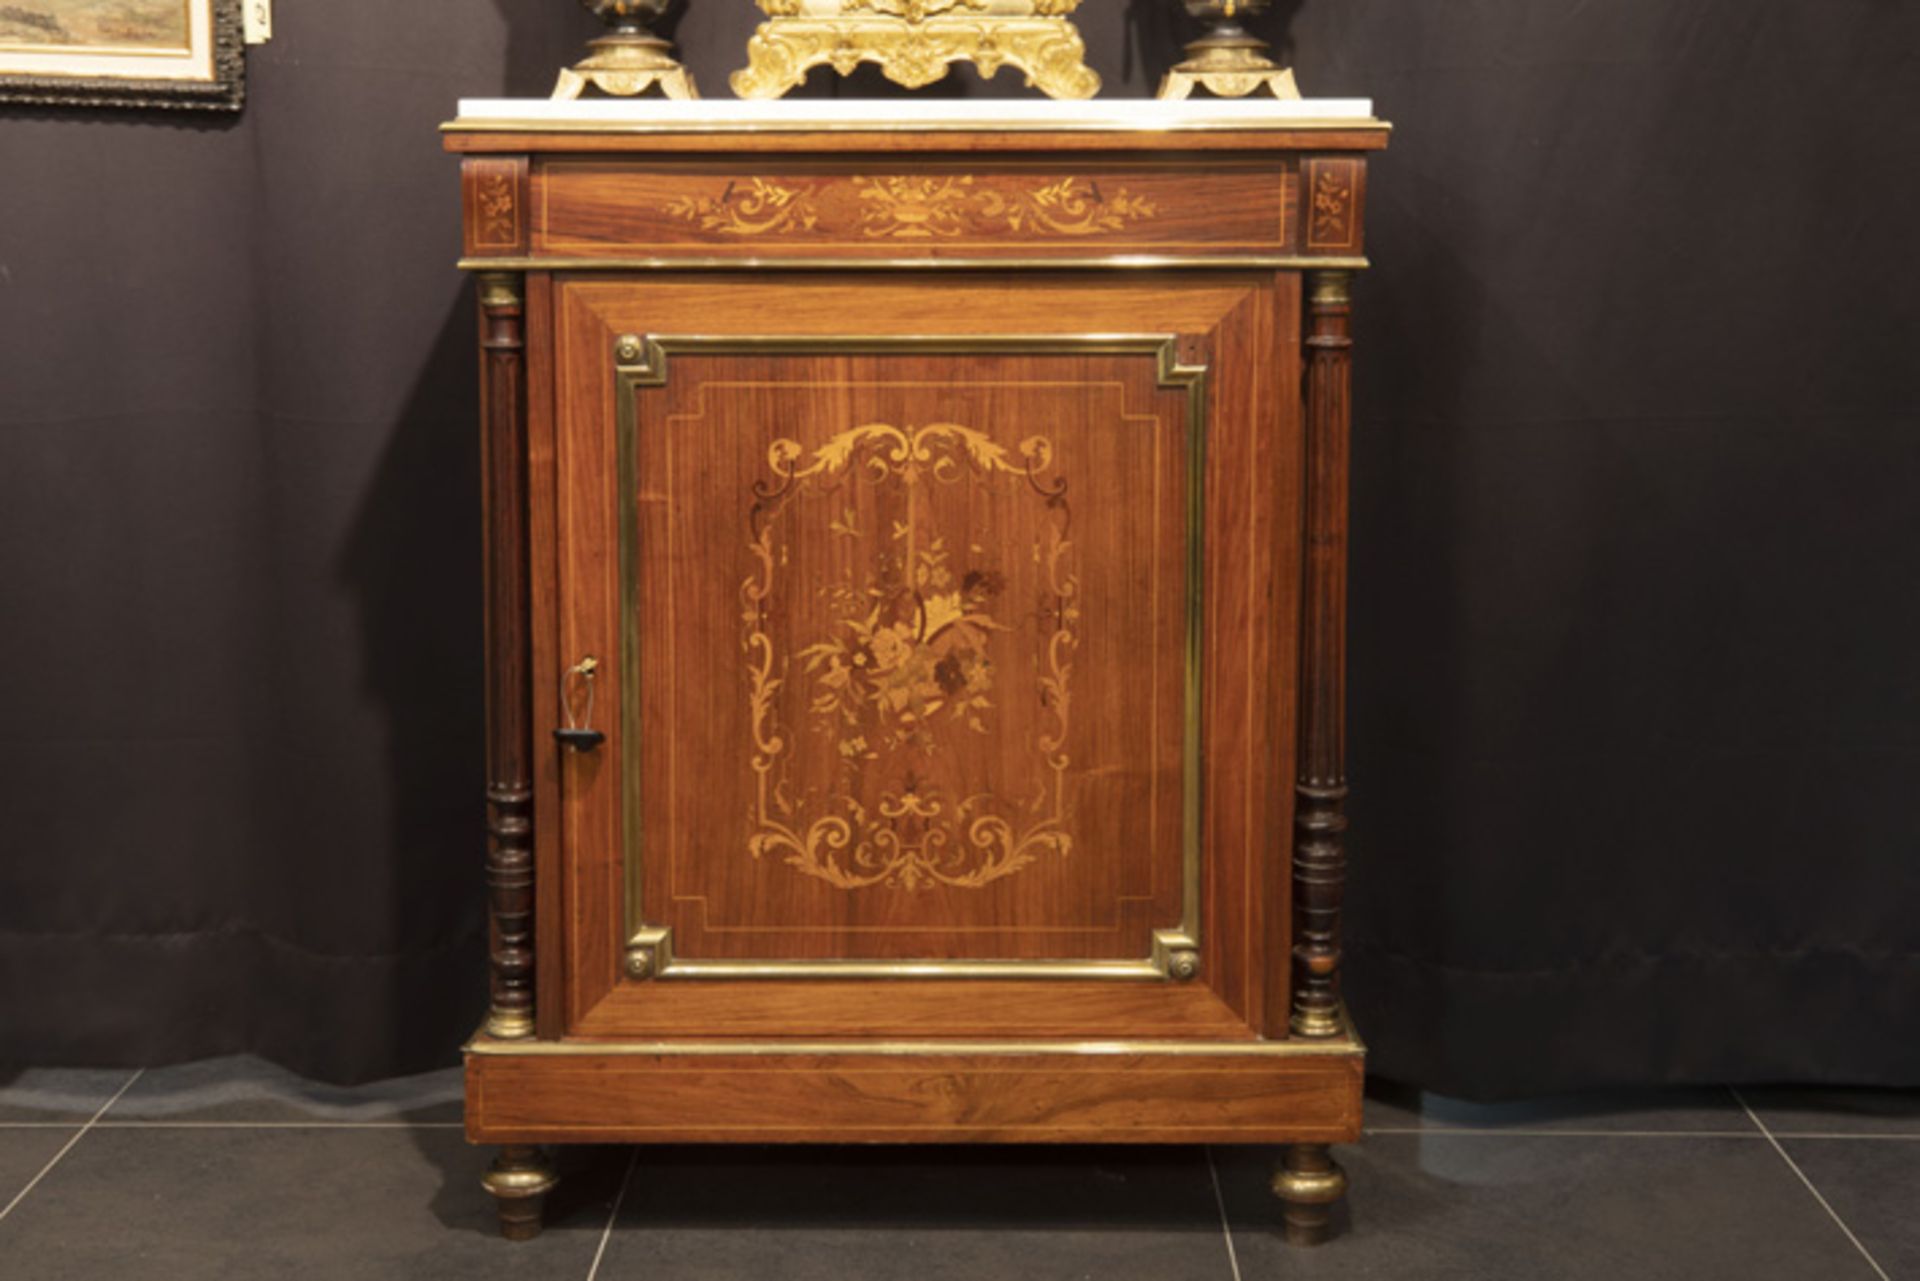 FRANKRIJK - 19° EEUW neoclassicistisch meubel in marqueterie versierd met koper- en bronsbeslag en